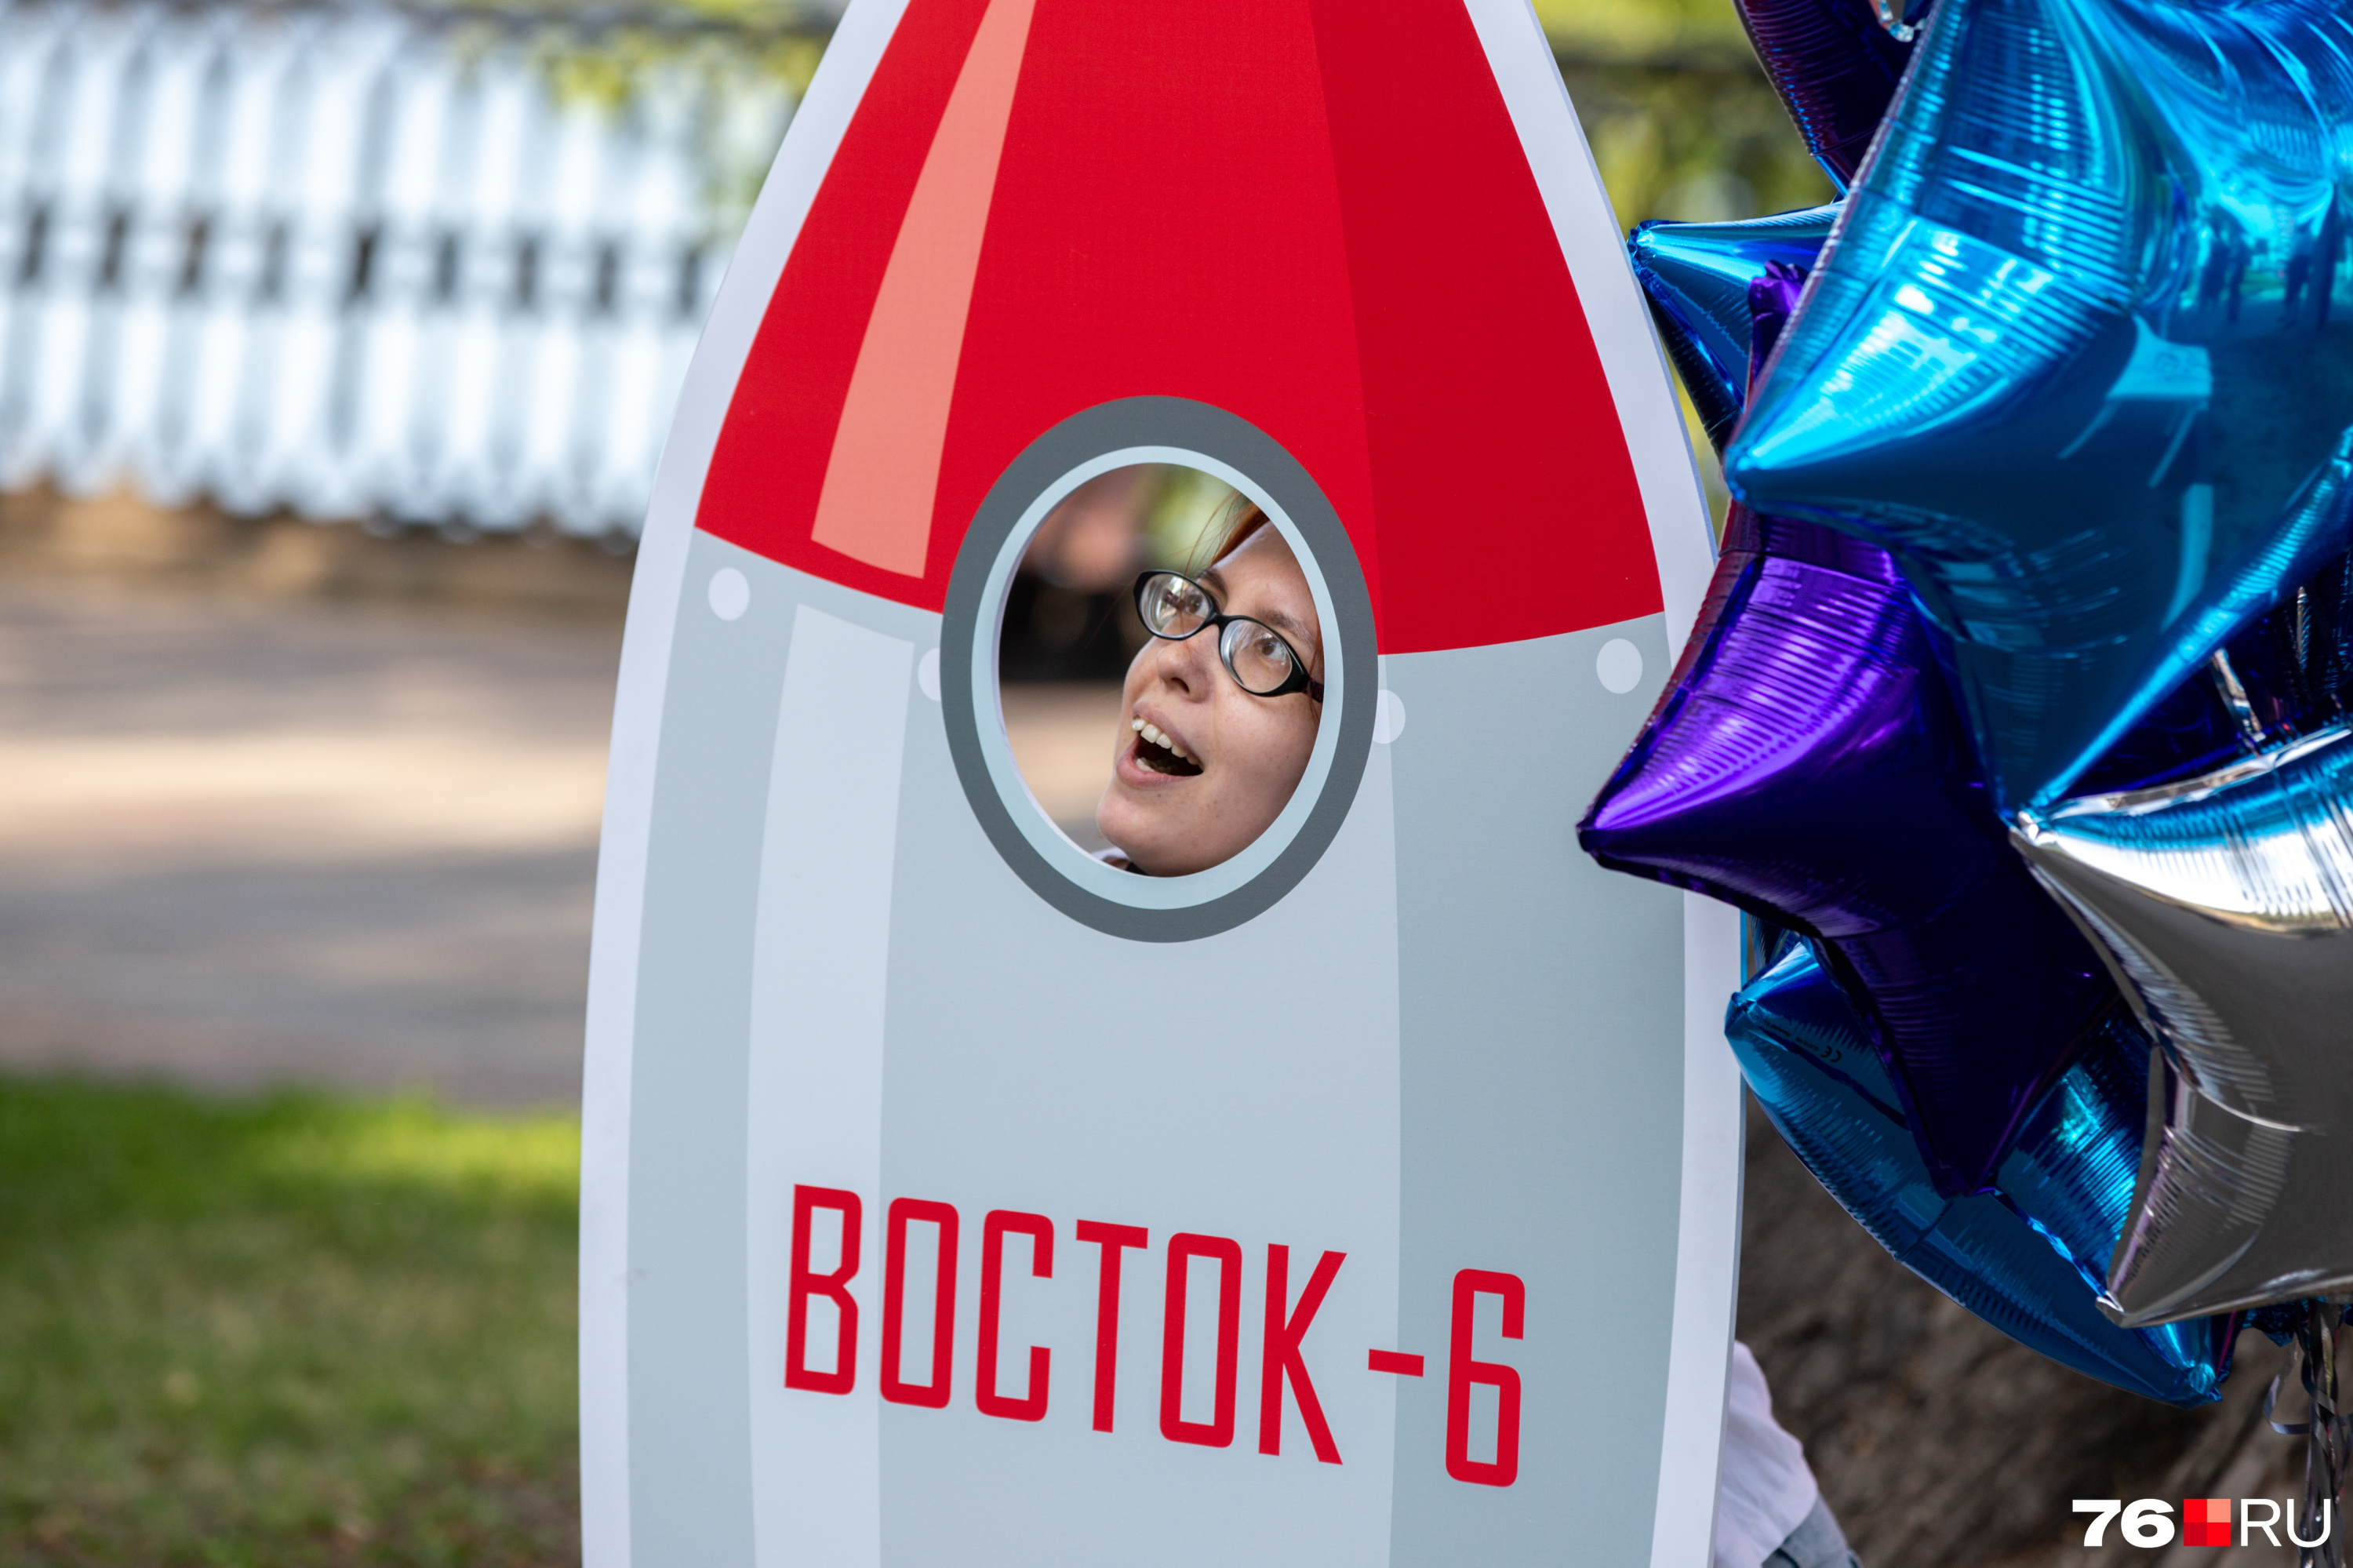 На ракете «Восток-6» Валентина Терешкова отправилась в своей полет